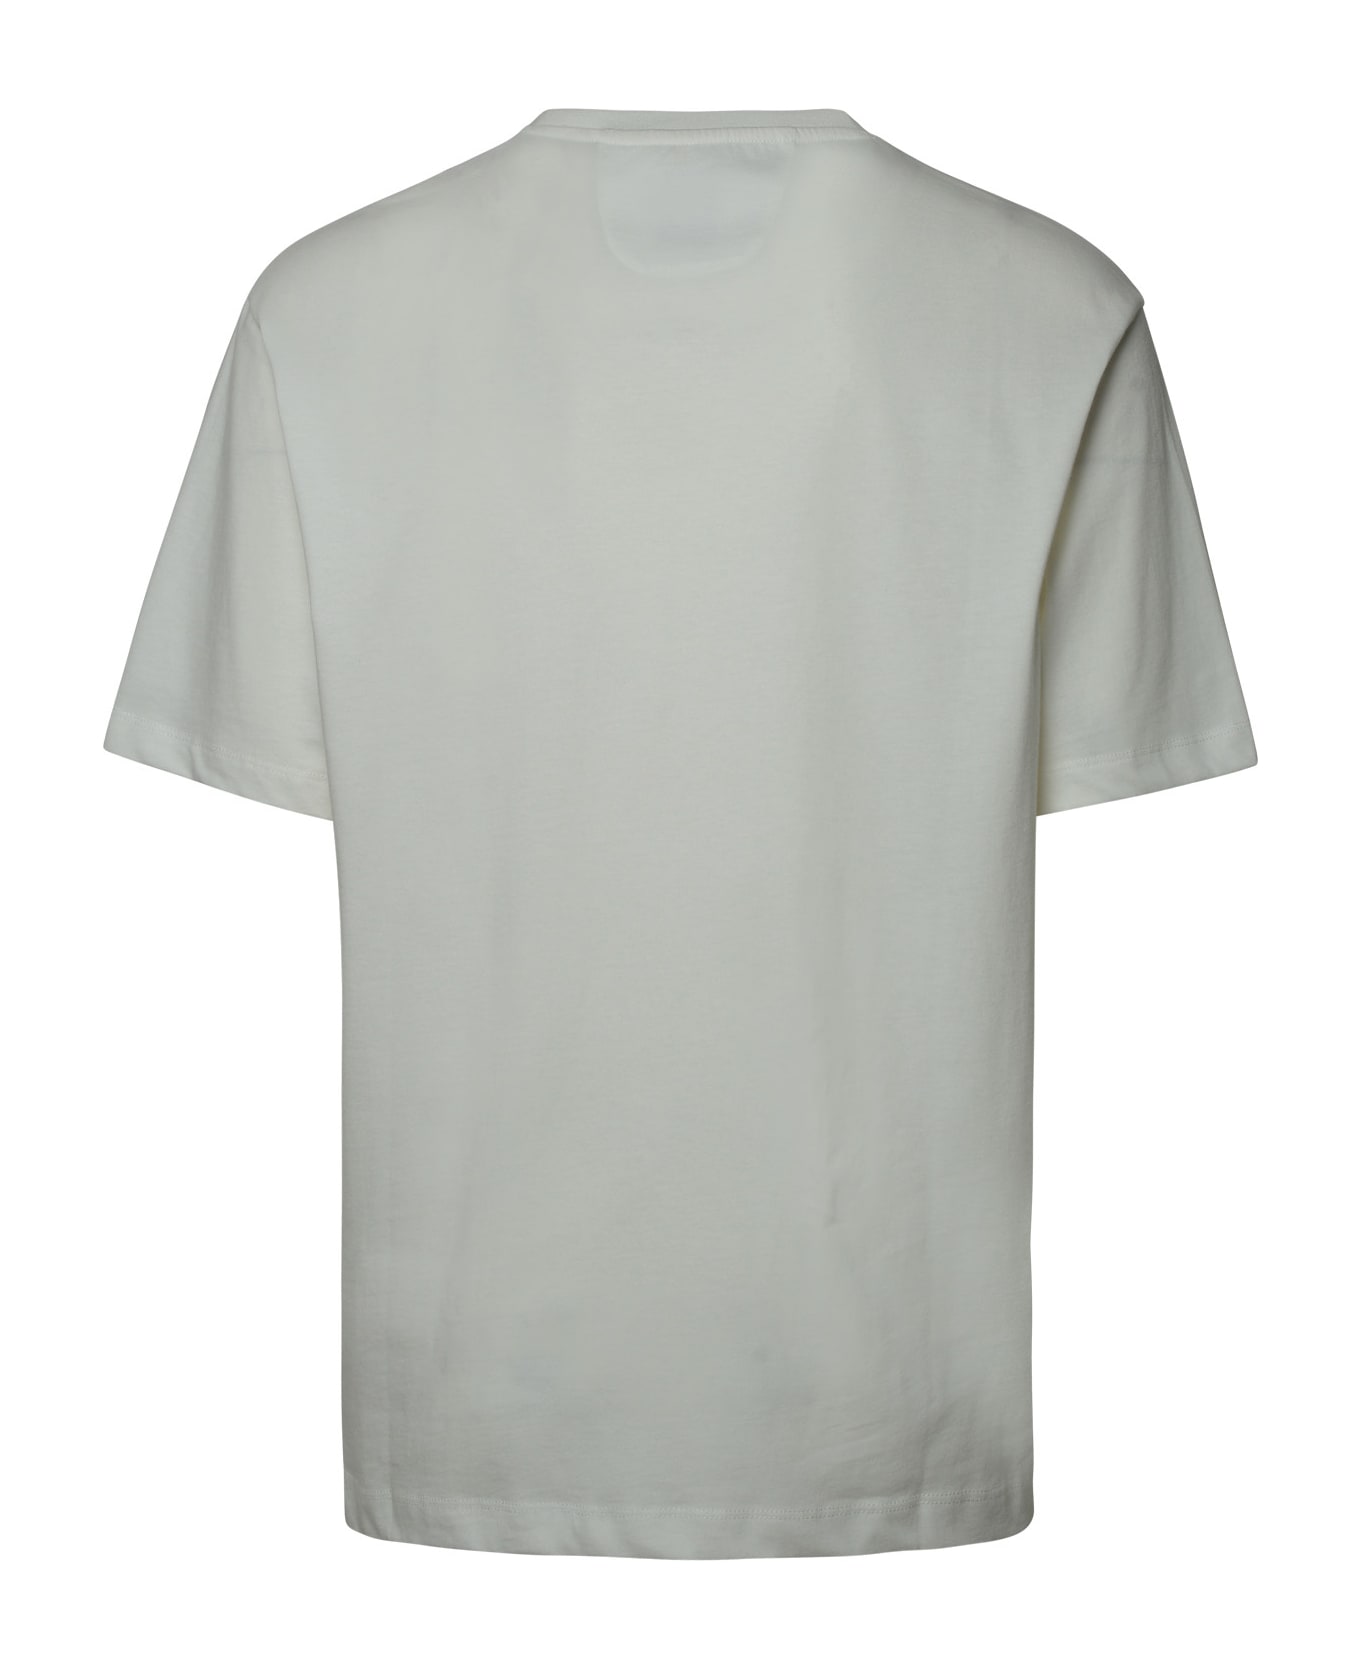 Ferrari White Cotton T-shirt - WHITE シャツ